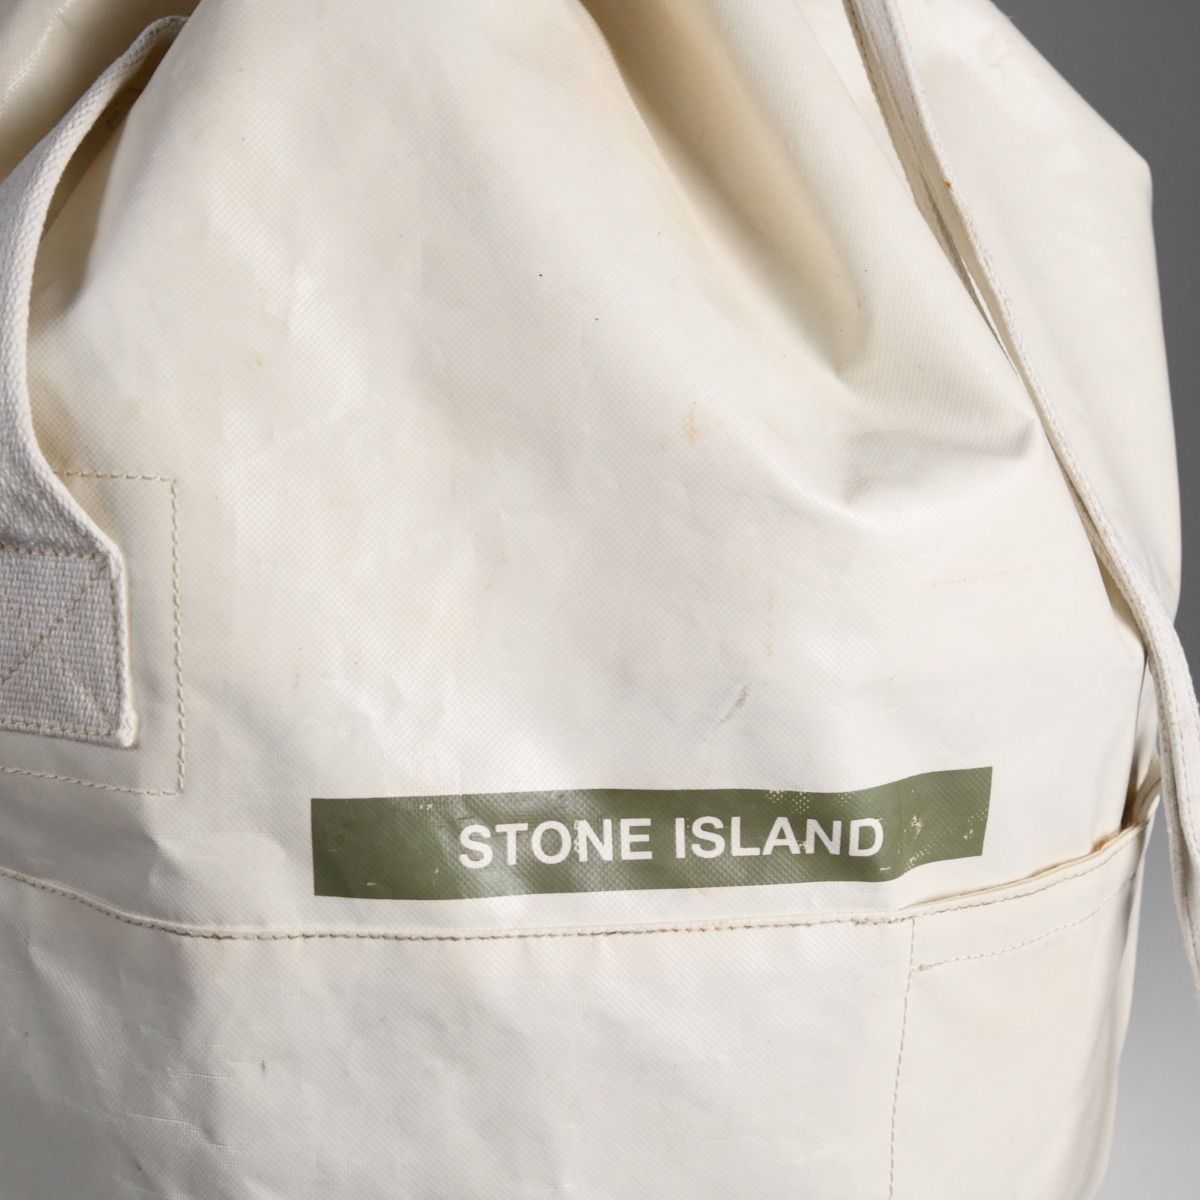 Stone Island A/W 1999 PVC Backpack